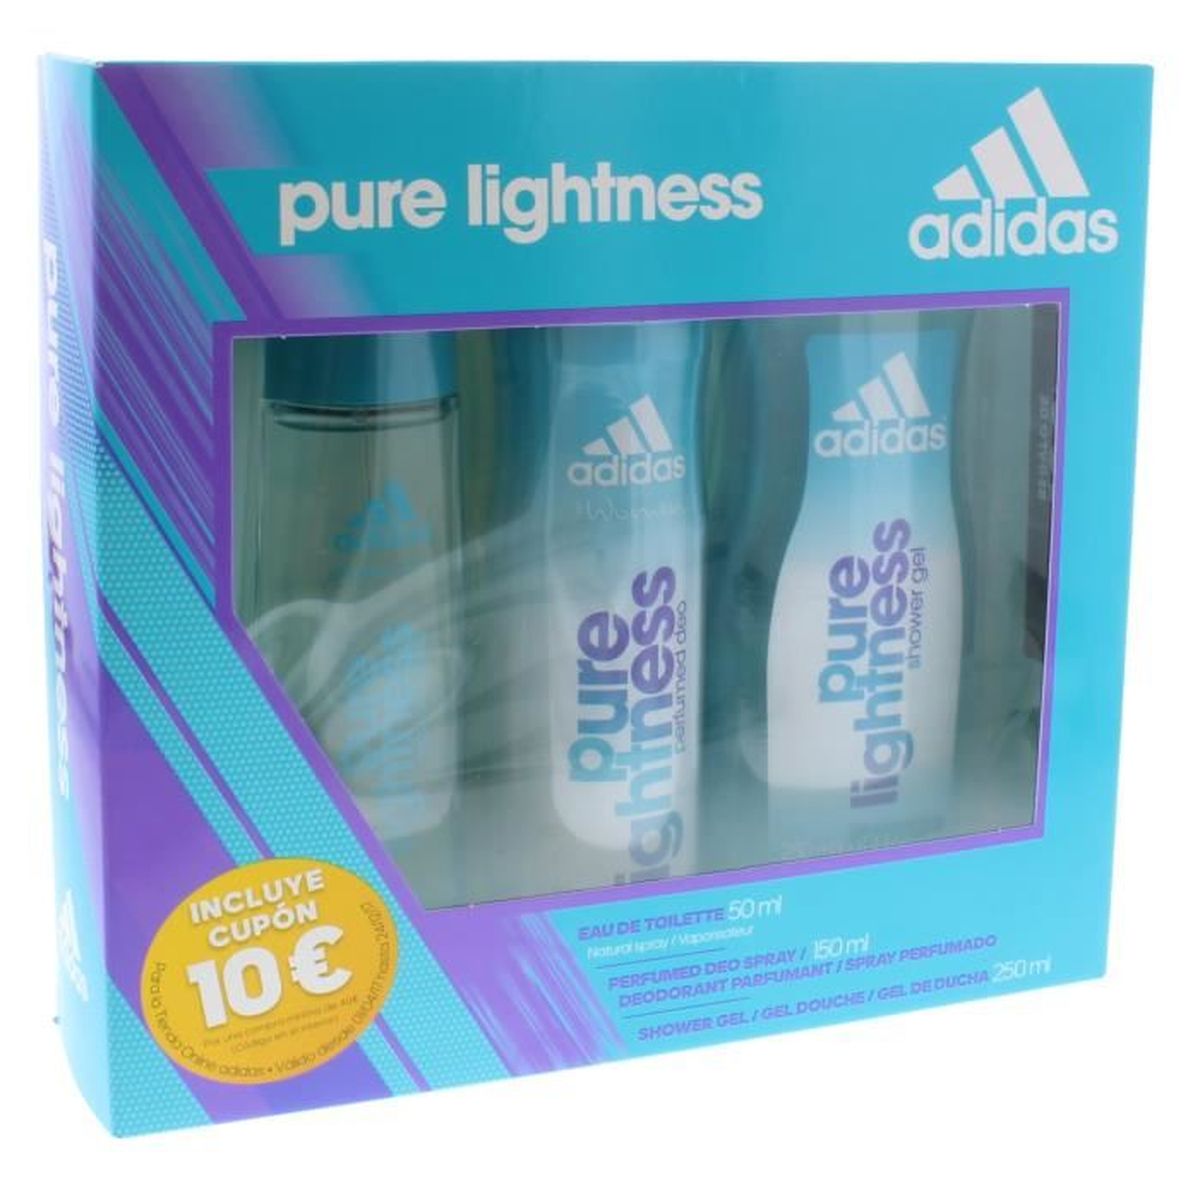 adidas pure lightness 50ml